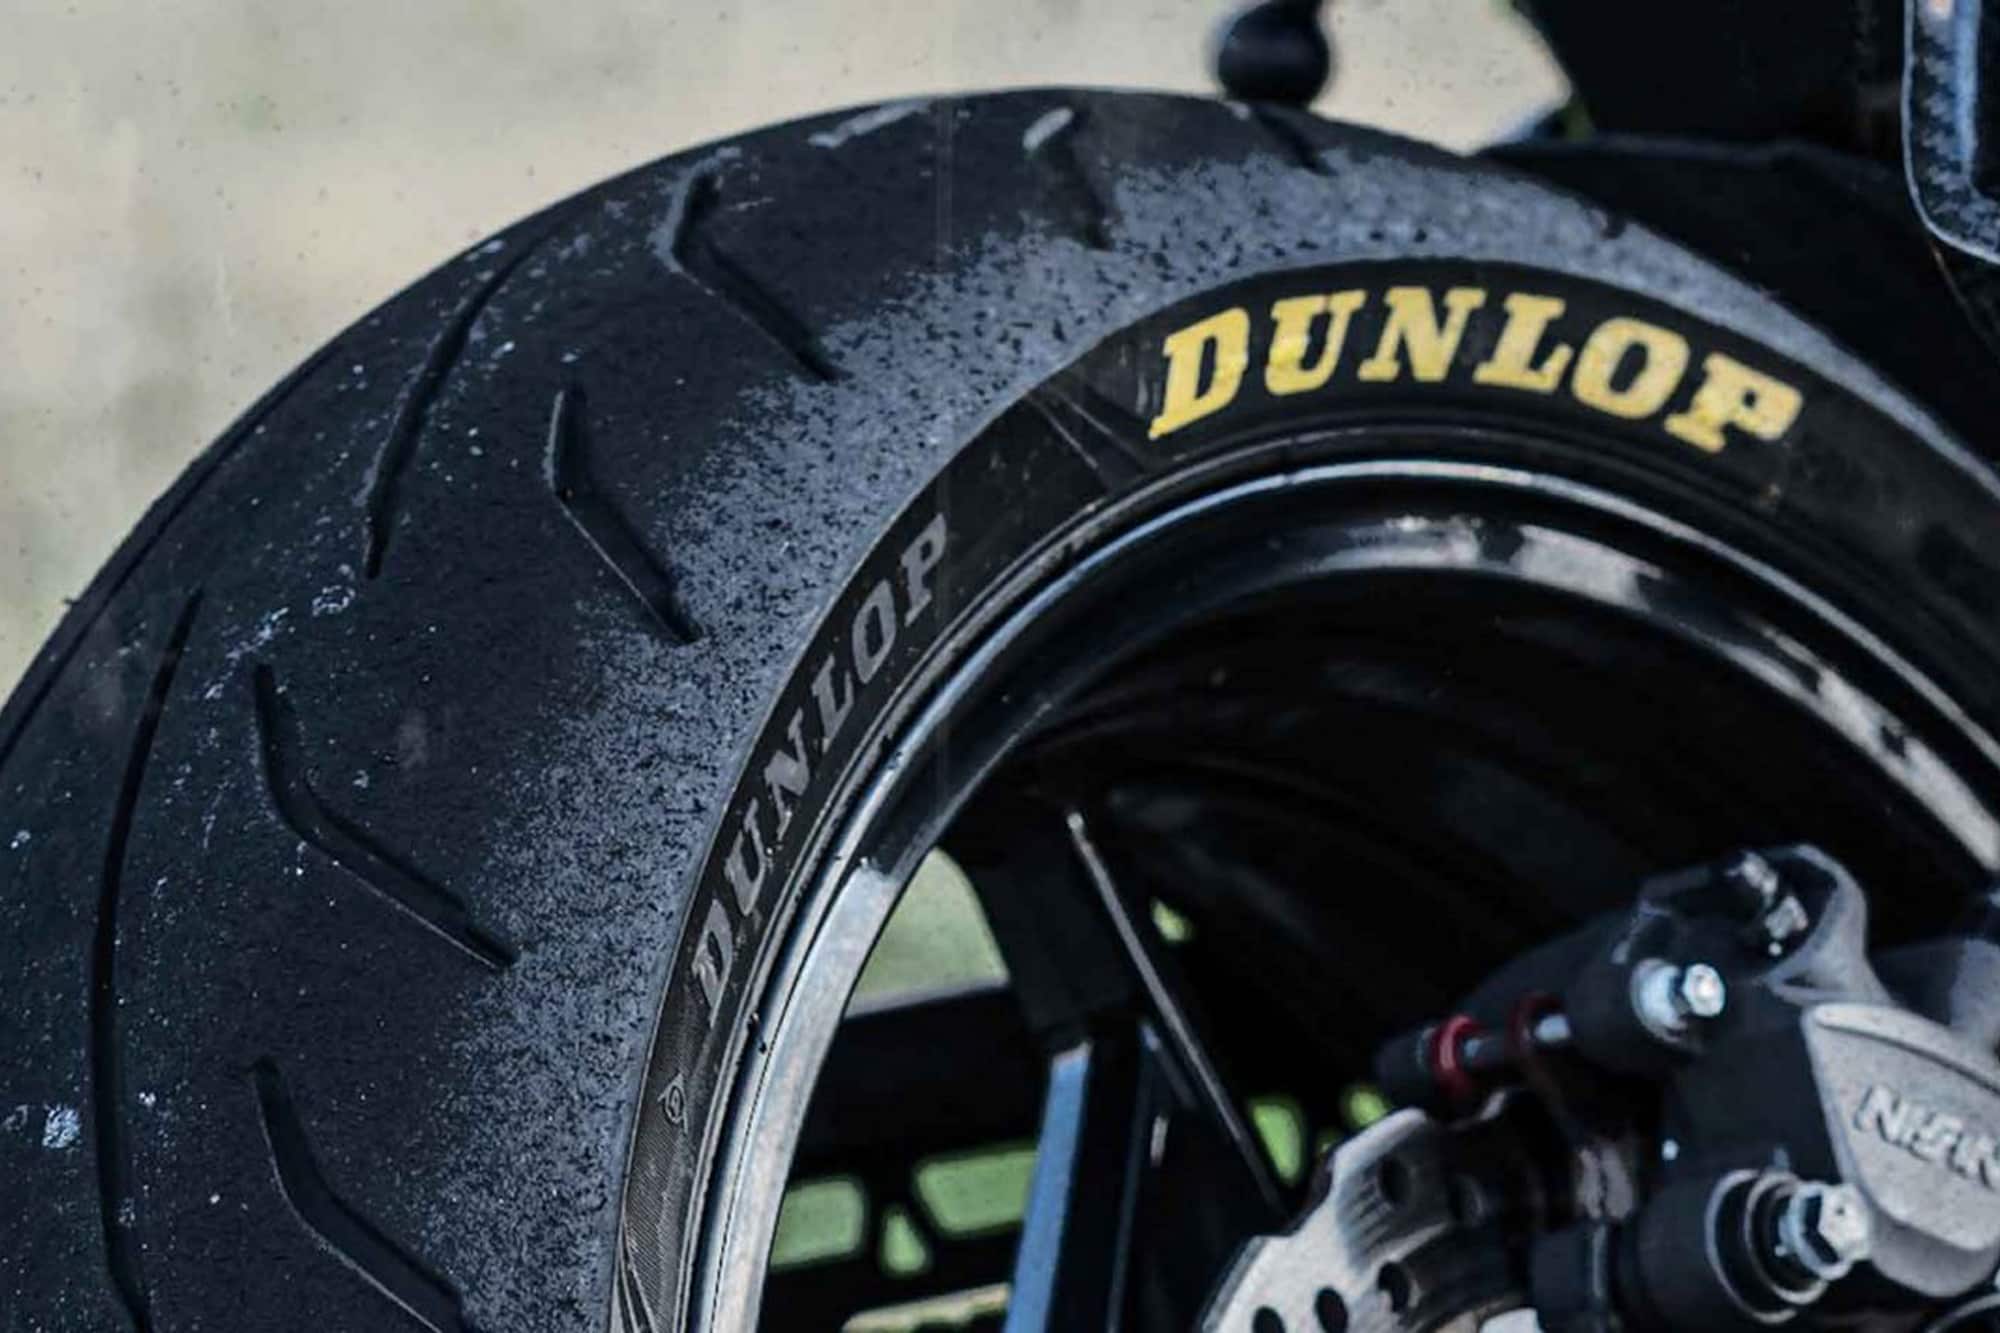 Dunlop Roadsmart IV elegido neumático del año 2022 por la revista NMR